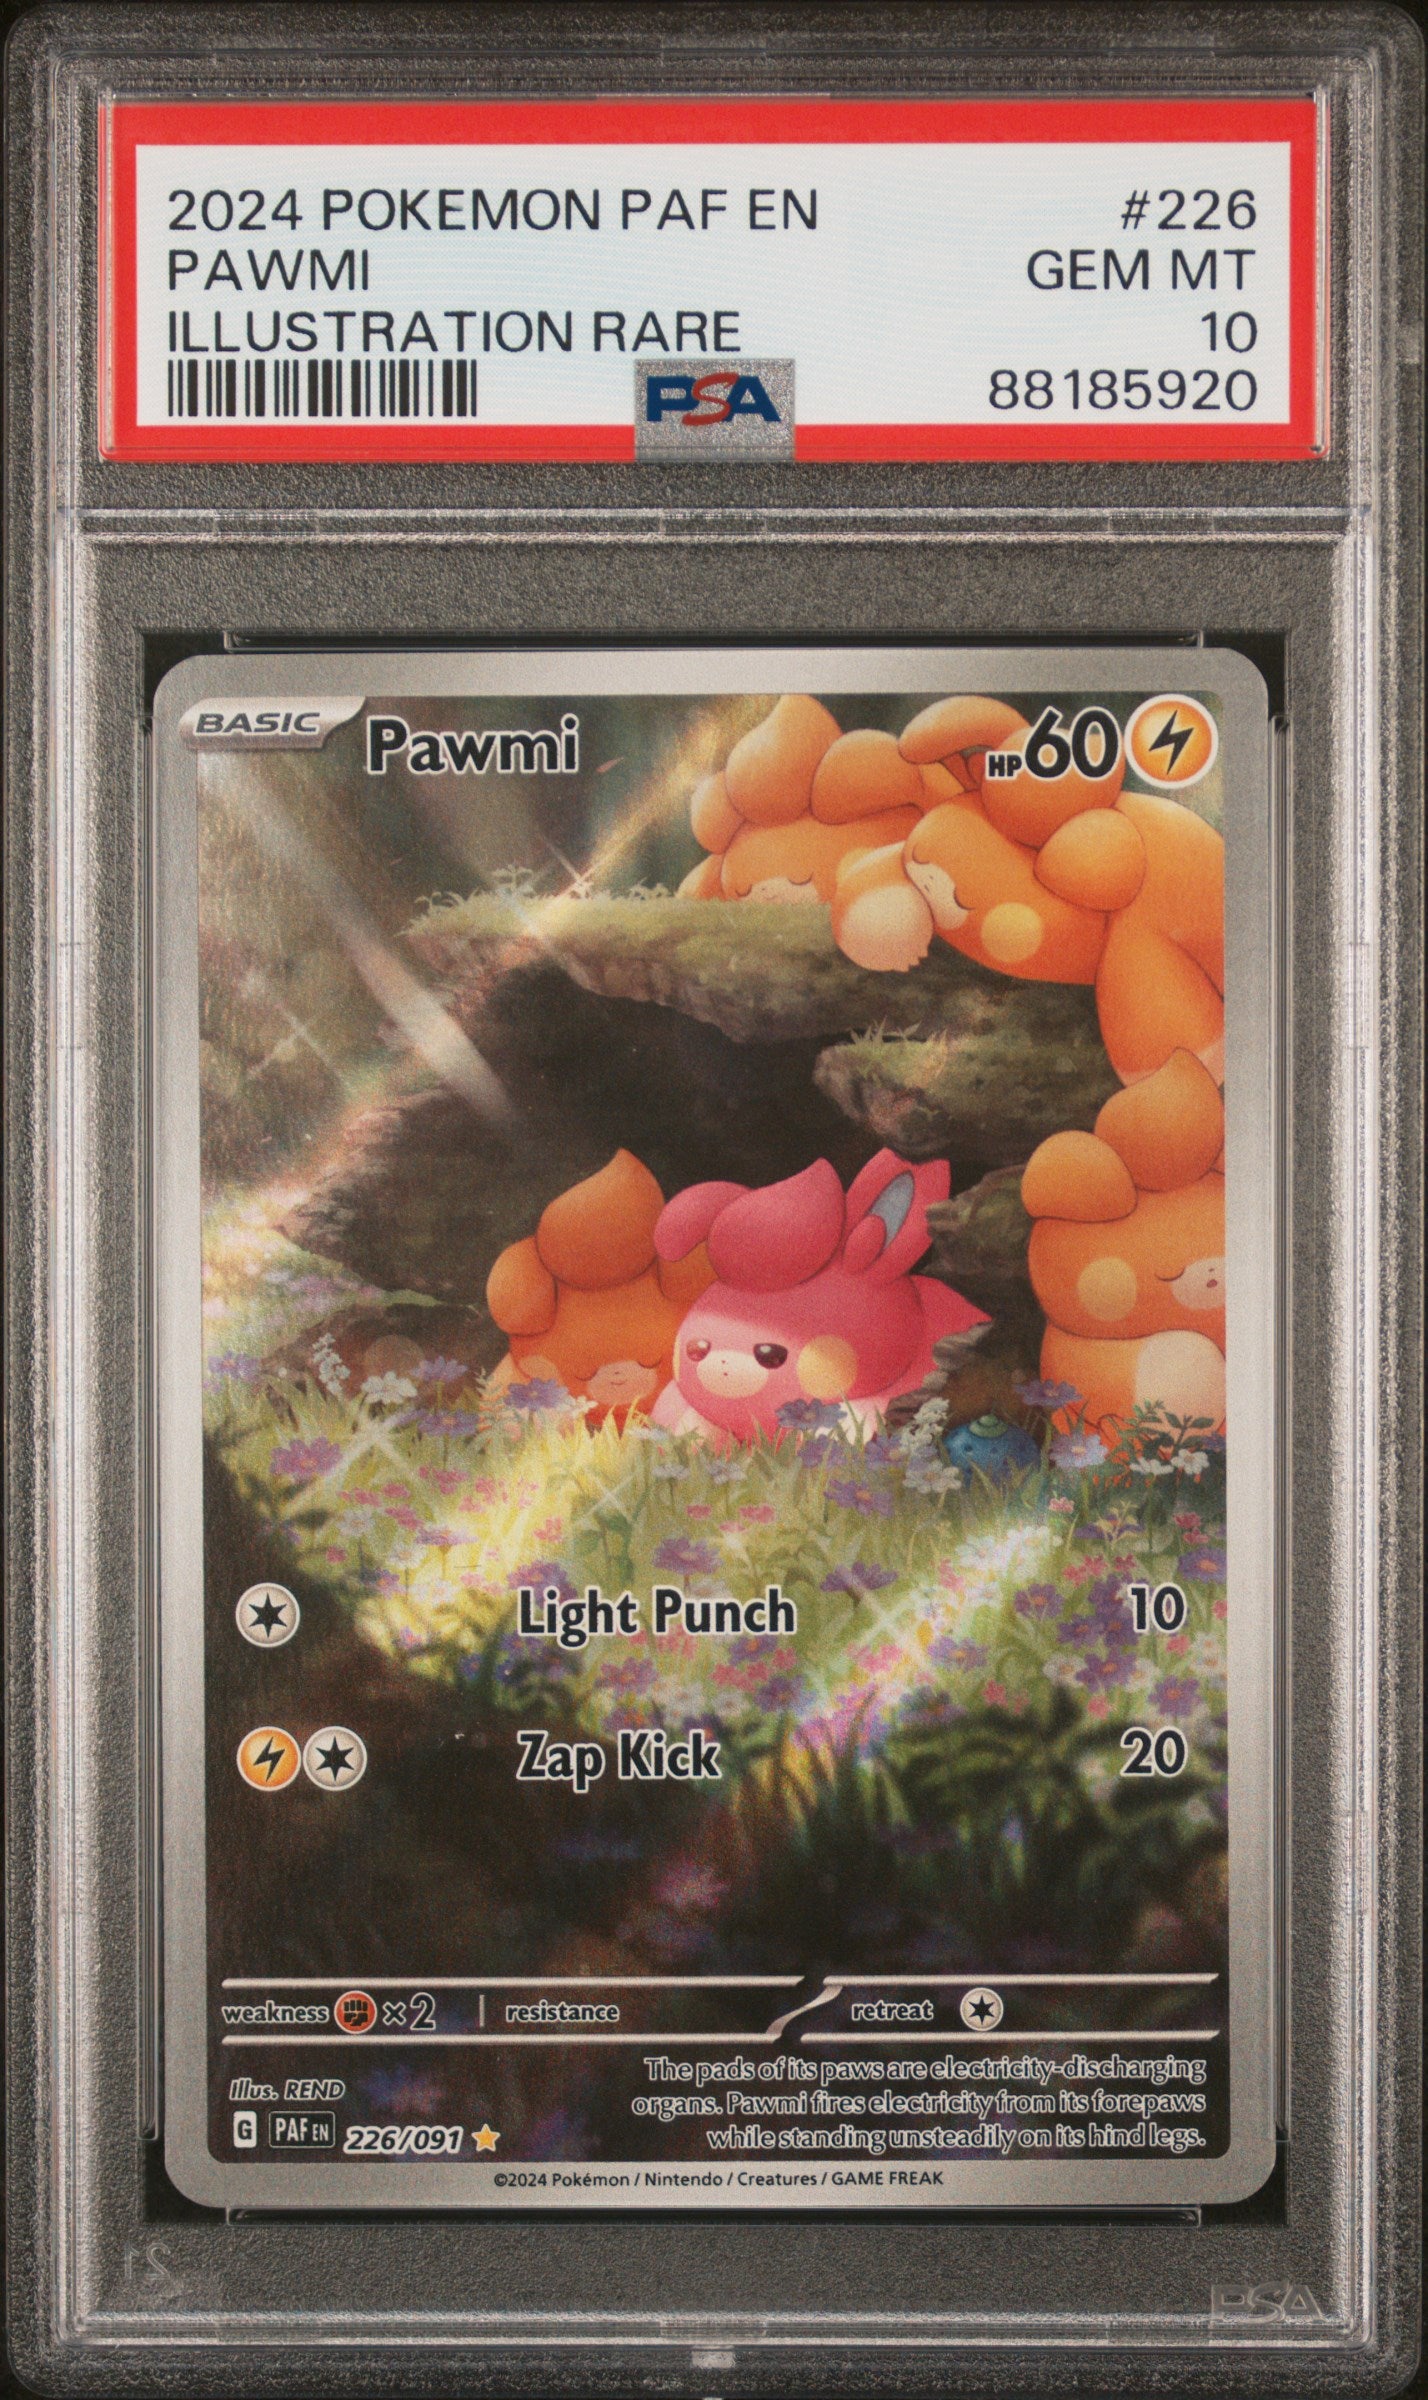 Pokémon - Pawmi Paldean Fates 226/091 (Illustration Rare) - PSA 10 (GEM-MINT)